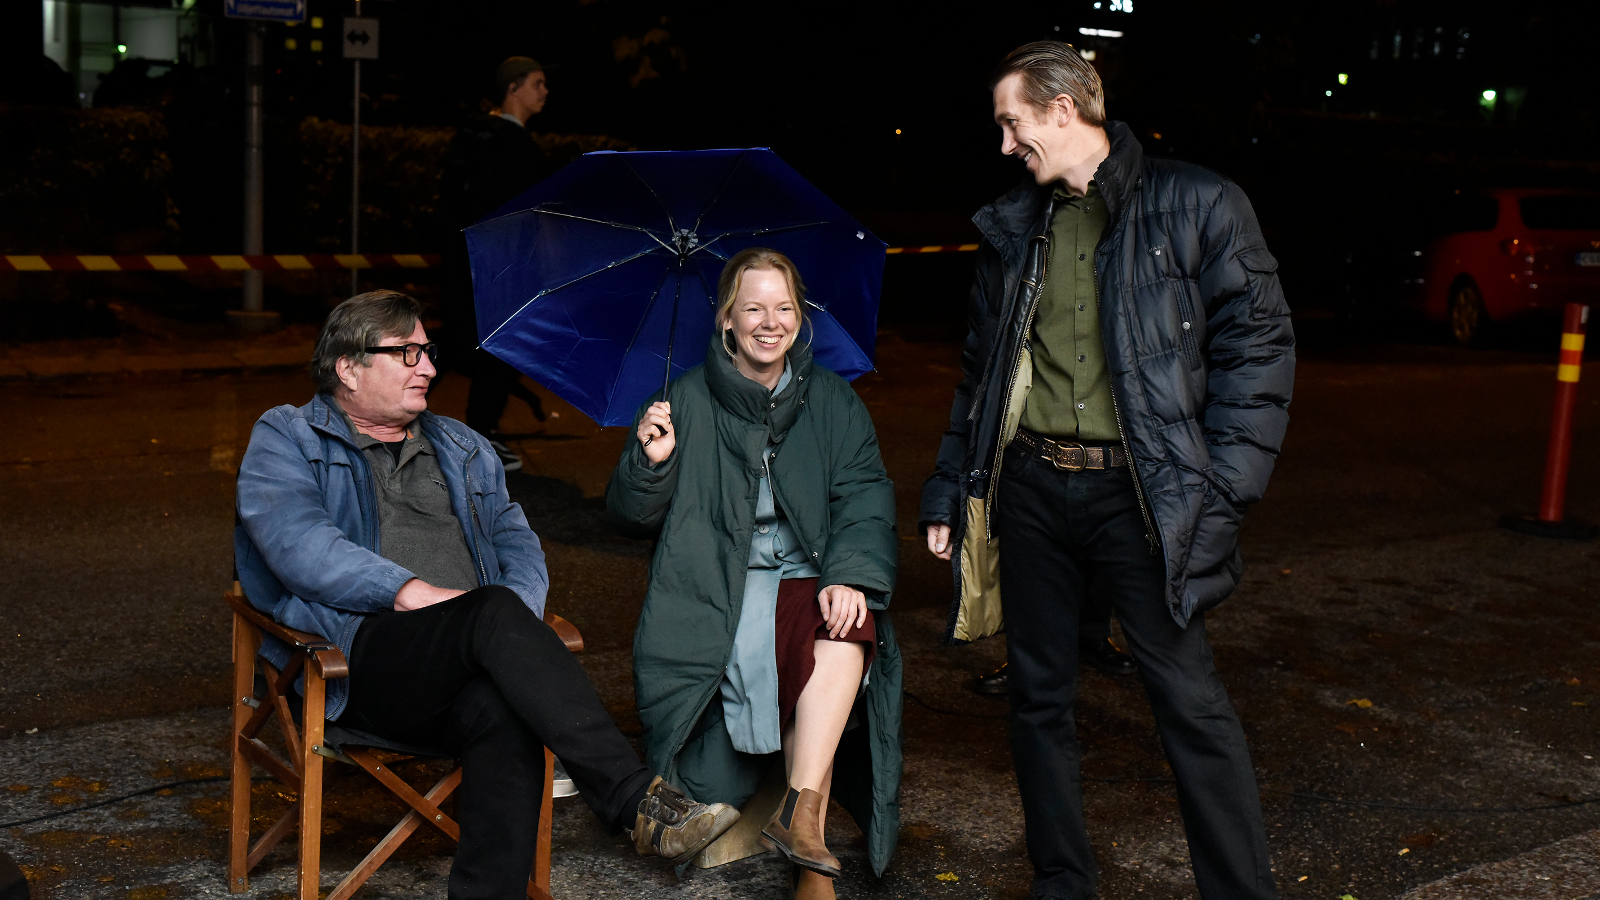 Kuvassa ovat pimeässä istumassa tuoleilla Aki Kaurismäki, Alma Pöysti ja seisomassa Jussi Vatanen. He juttelevat.